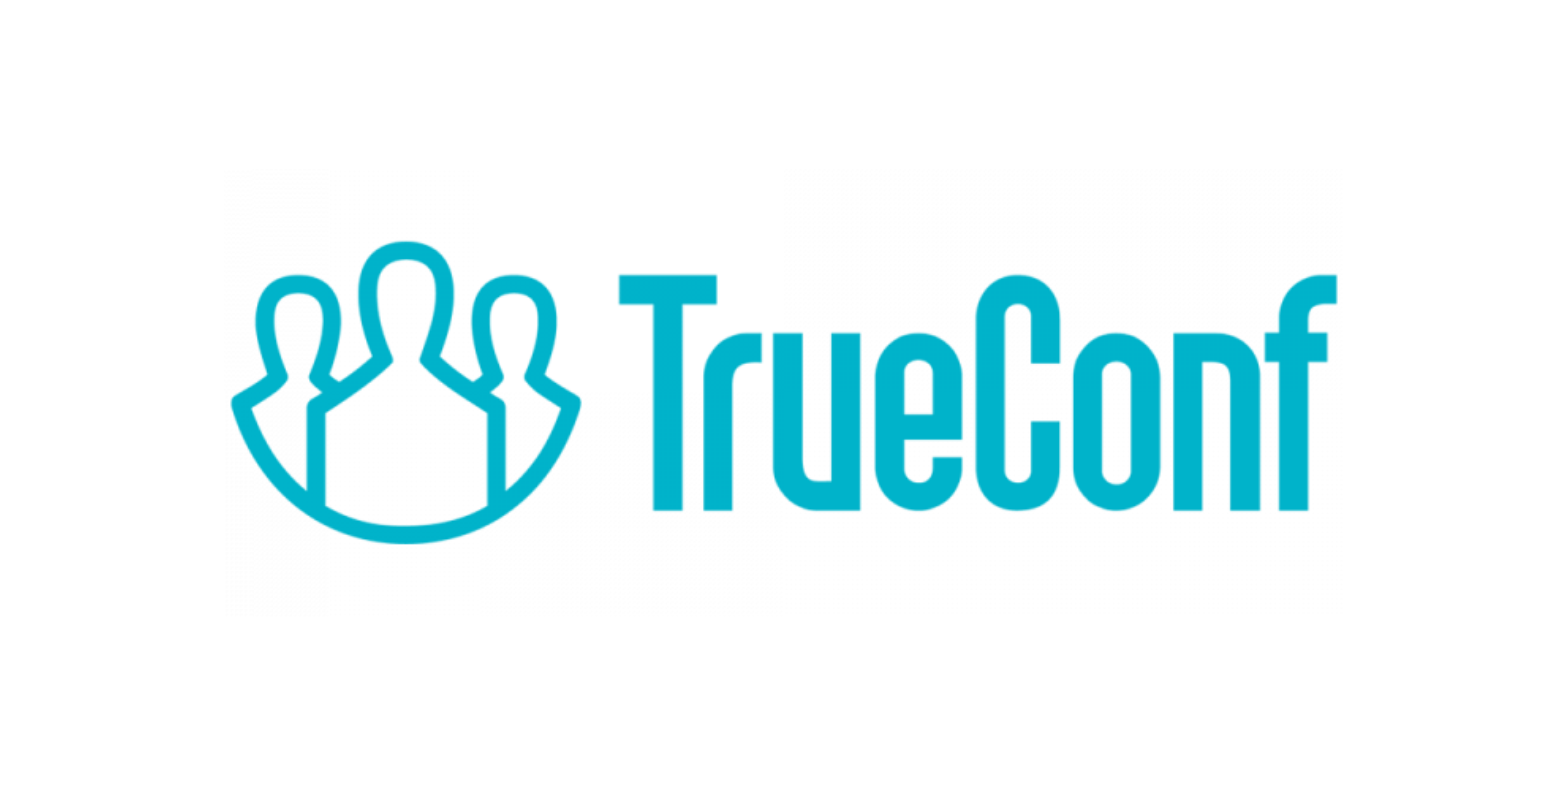 TrueConf Server Трансляция видеоконференций на 1 год  EDU